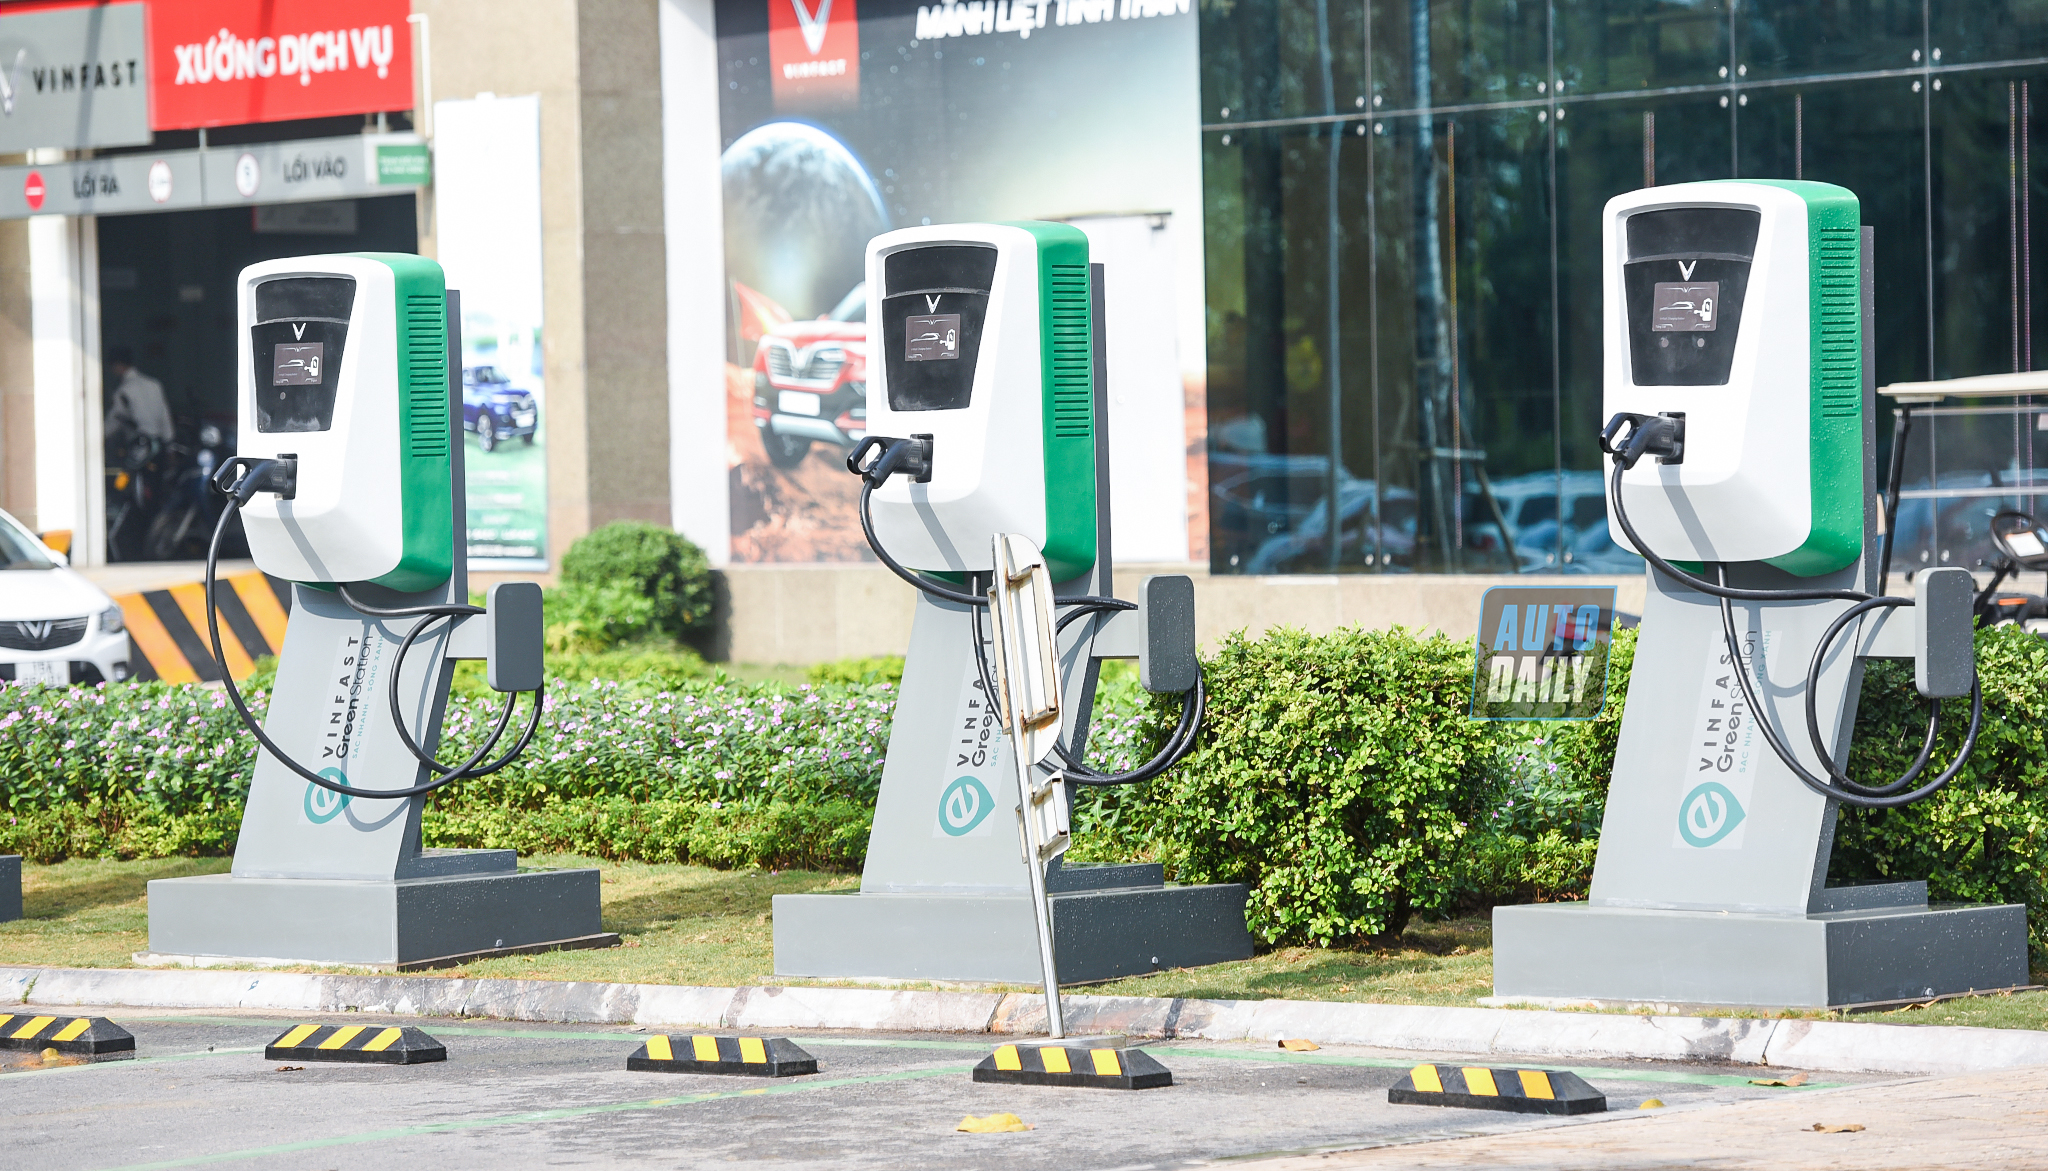 Cận cảnh mô hình trạm sạc nhanh cho xe điện của VinFast tại Hà Nội dsc-3386-copy.jpg